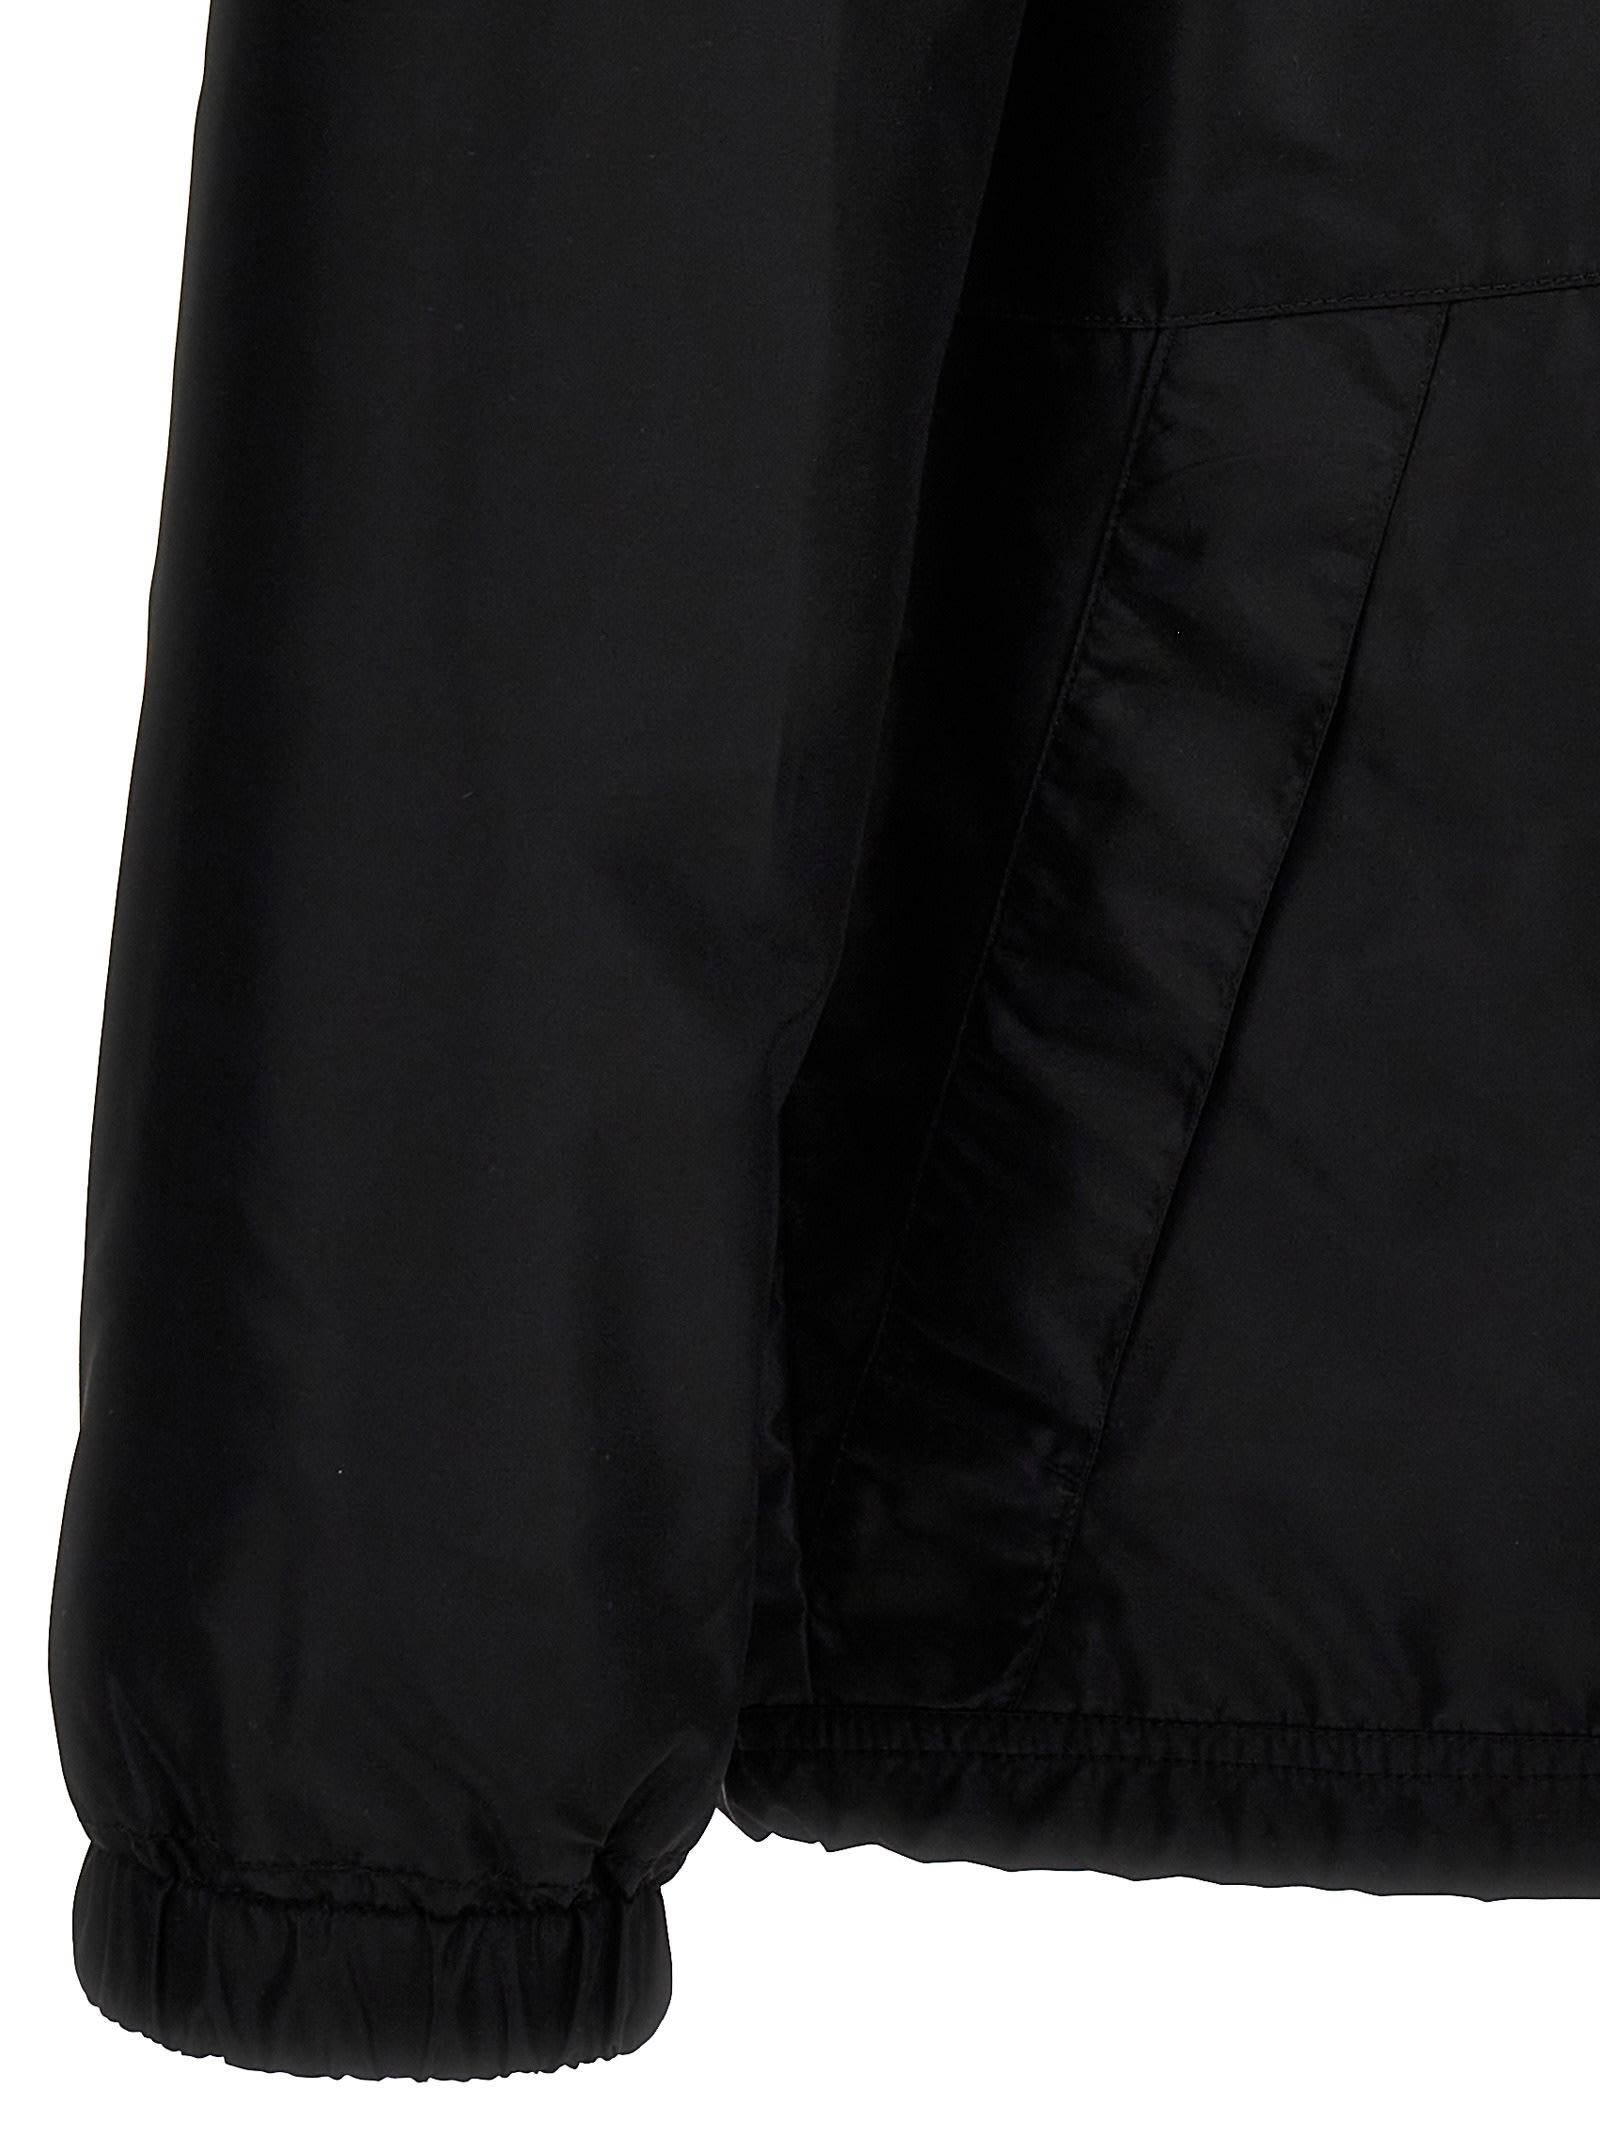 Shop Apc Aleksi Jacket In Black